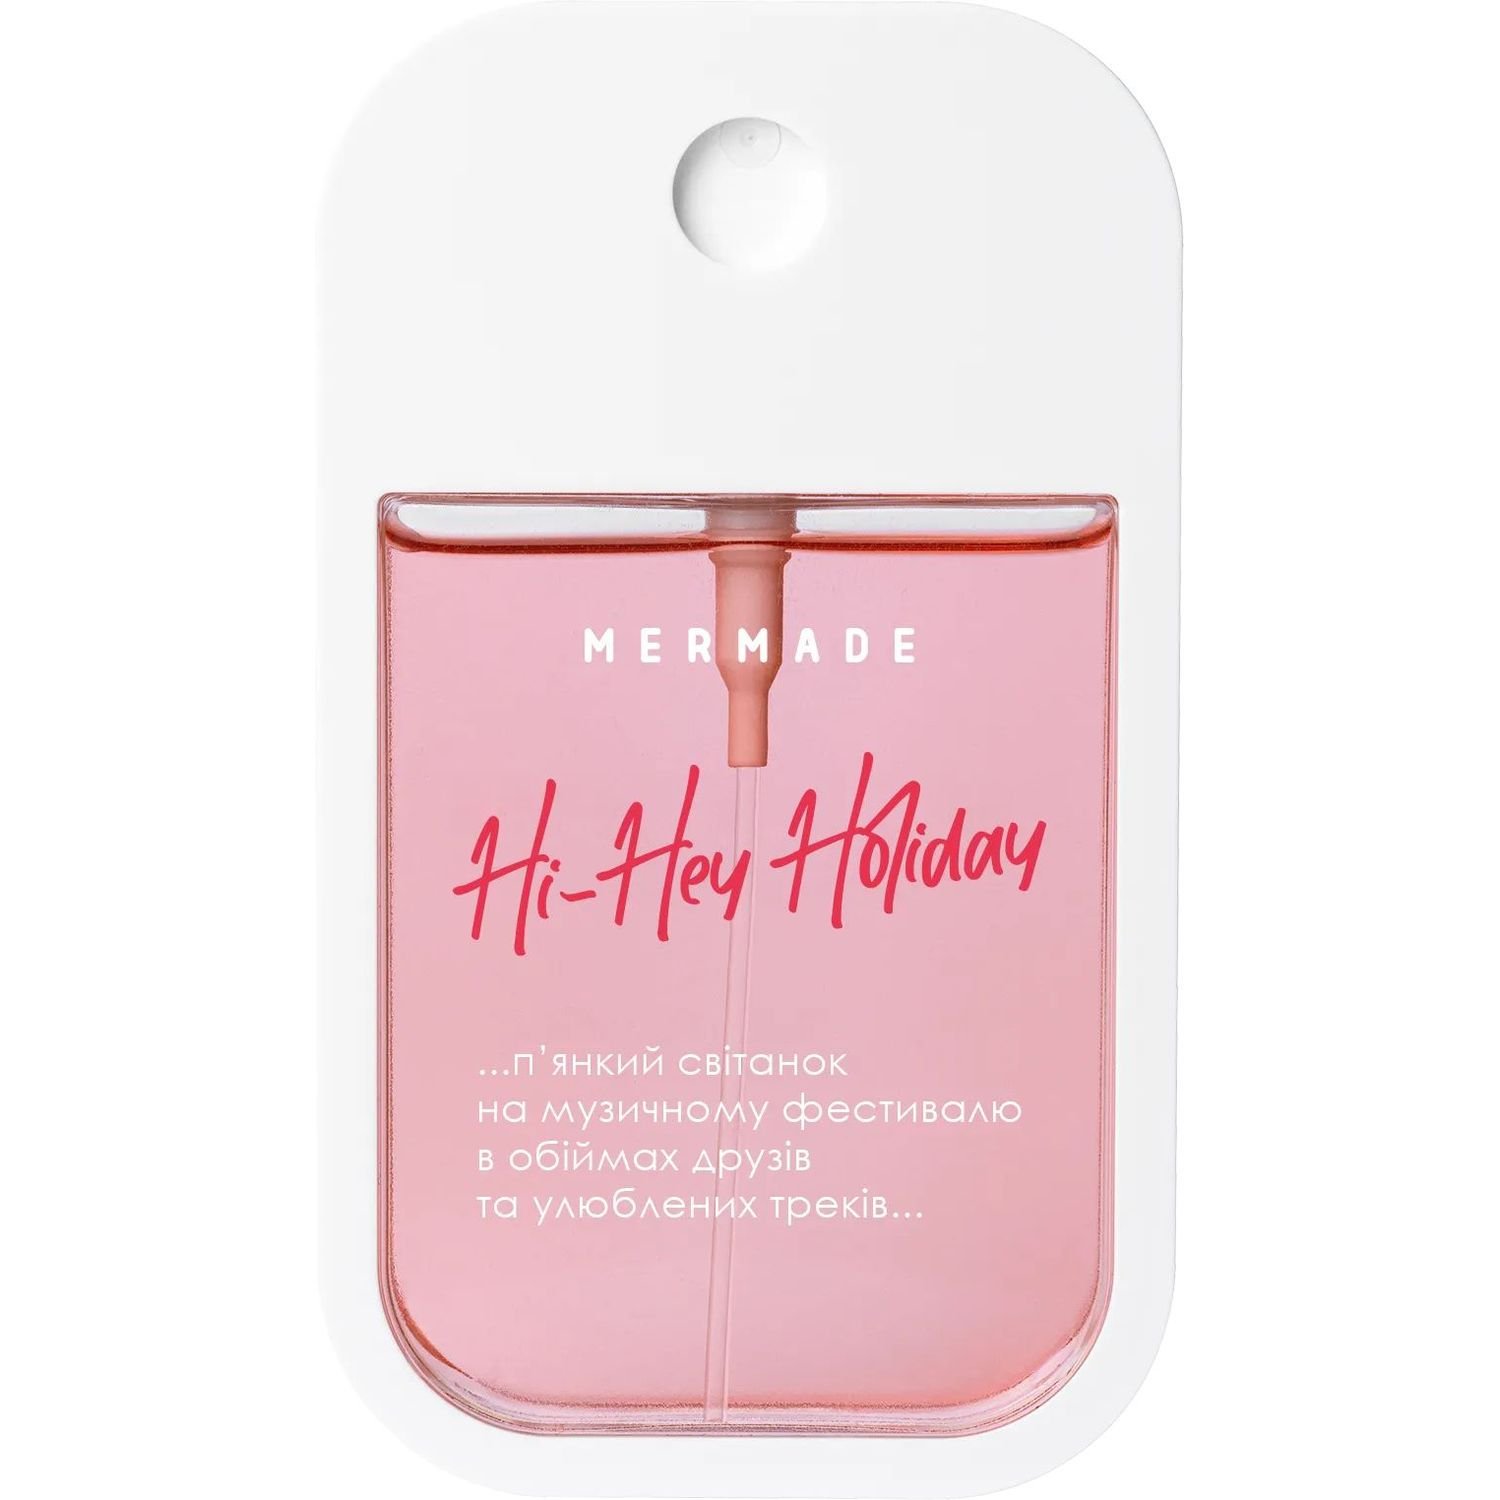 Парфюмированная вода для женщин Mermade Hi-Hey-Holiday, 50 мл - фото 1